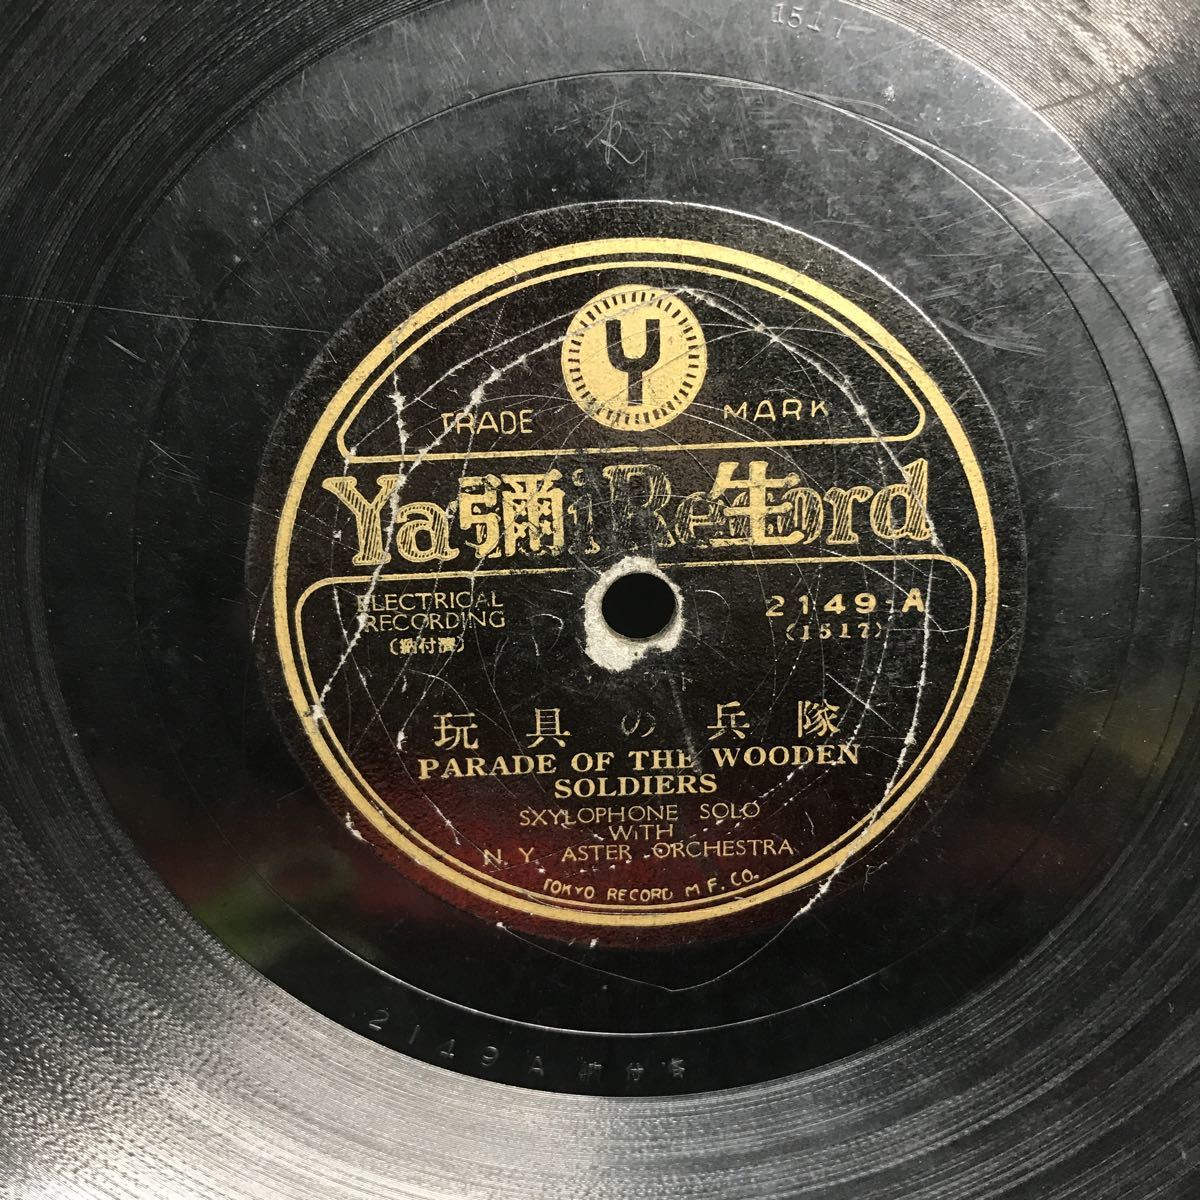 1971 SP盤 10インチ レコード 「玩具の兵隊」「ハーミン マイ セルフ」ブルース 当時物 彌生レコード 弥生レコード_画像2